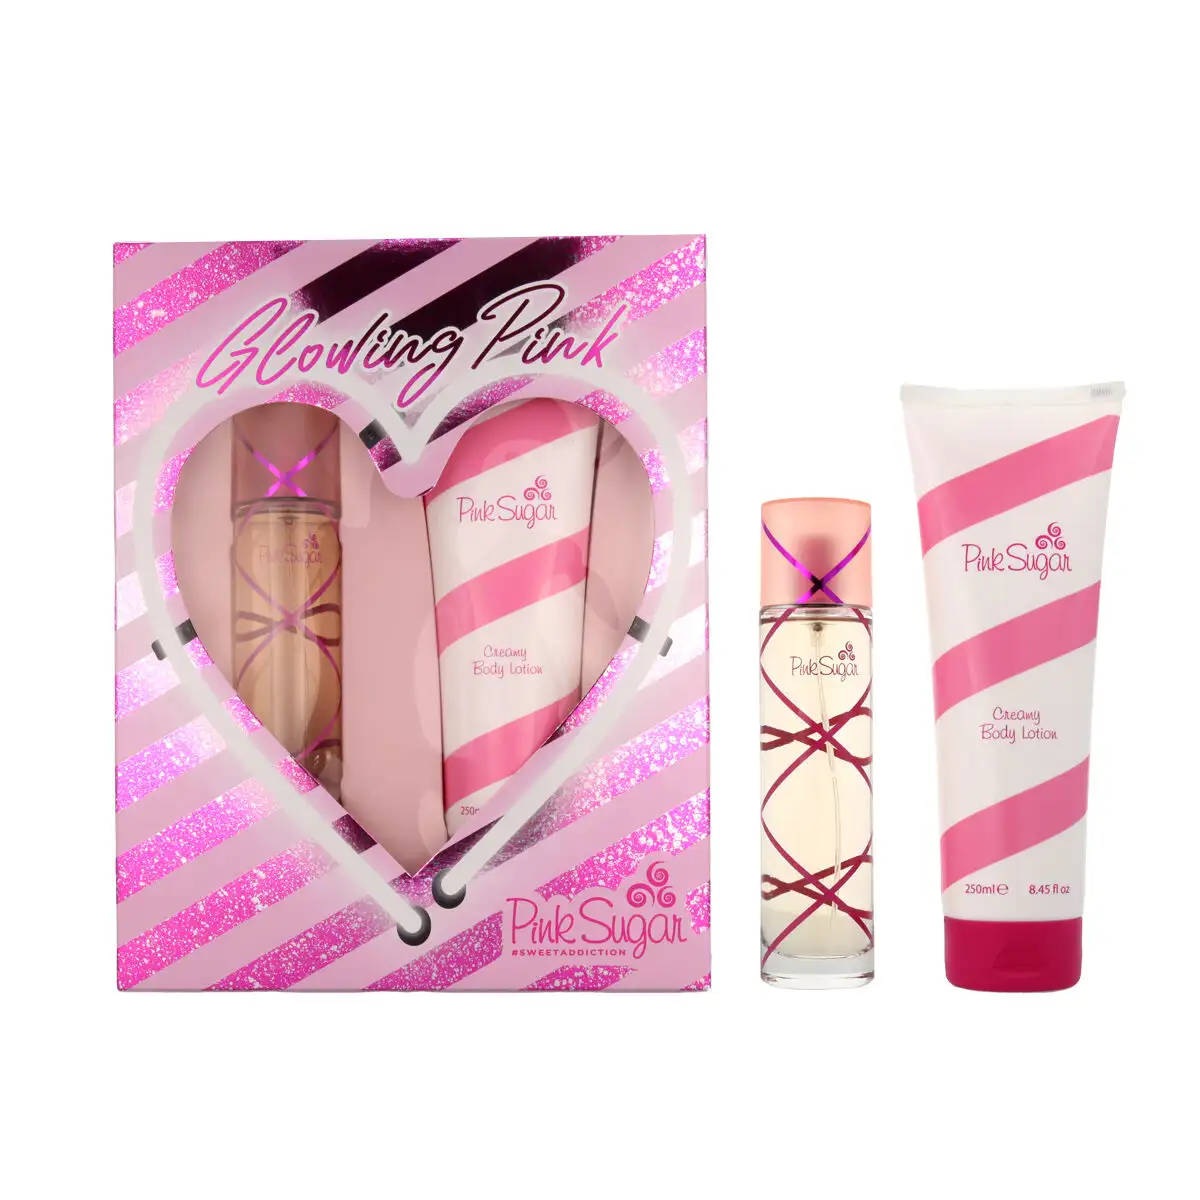 Set de parfum femme aquolina 2 pieces pink sugar_8343. DIAYTAR SENEGAL - Où Choisir est un Plaisir. Explorez notre boutique en ligne et choisissez parmi des produits de qualité qui satisferont vos besoins et vos goûts.